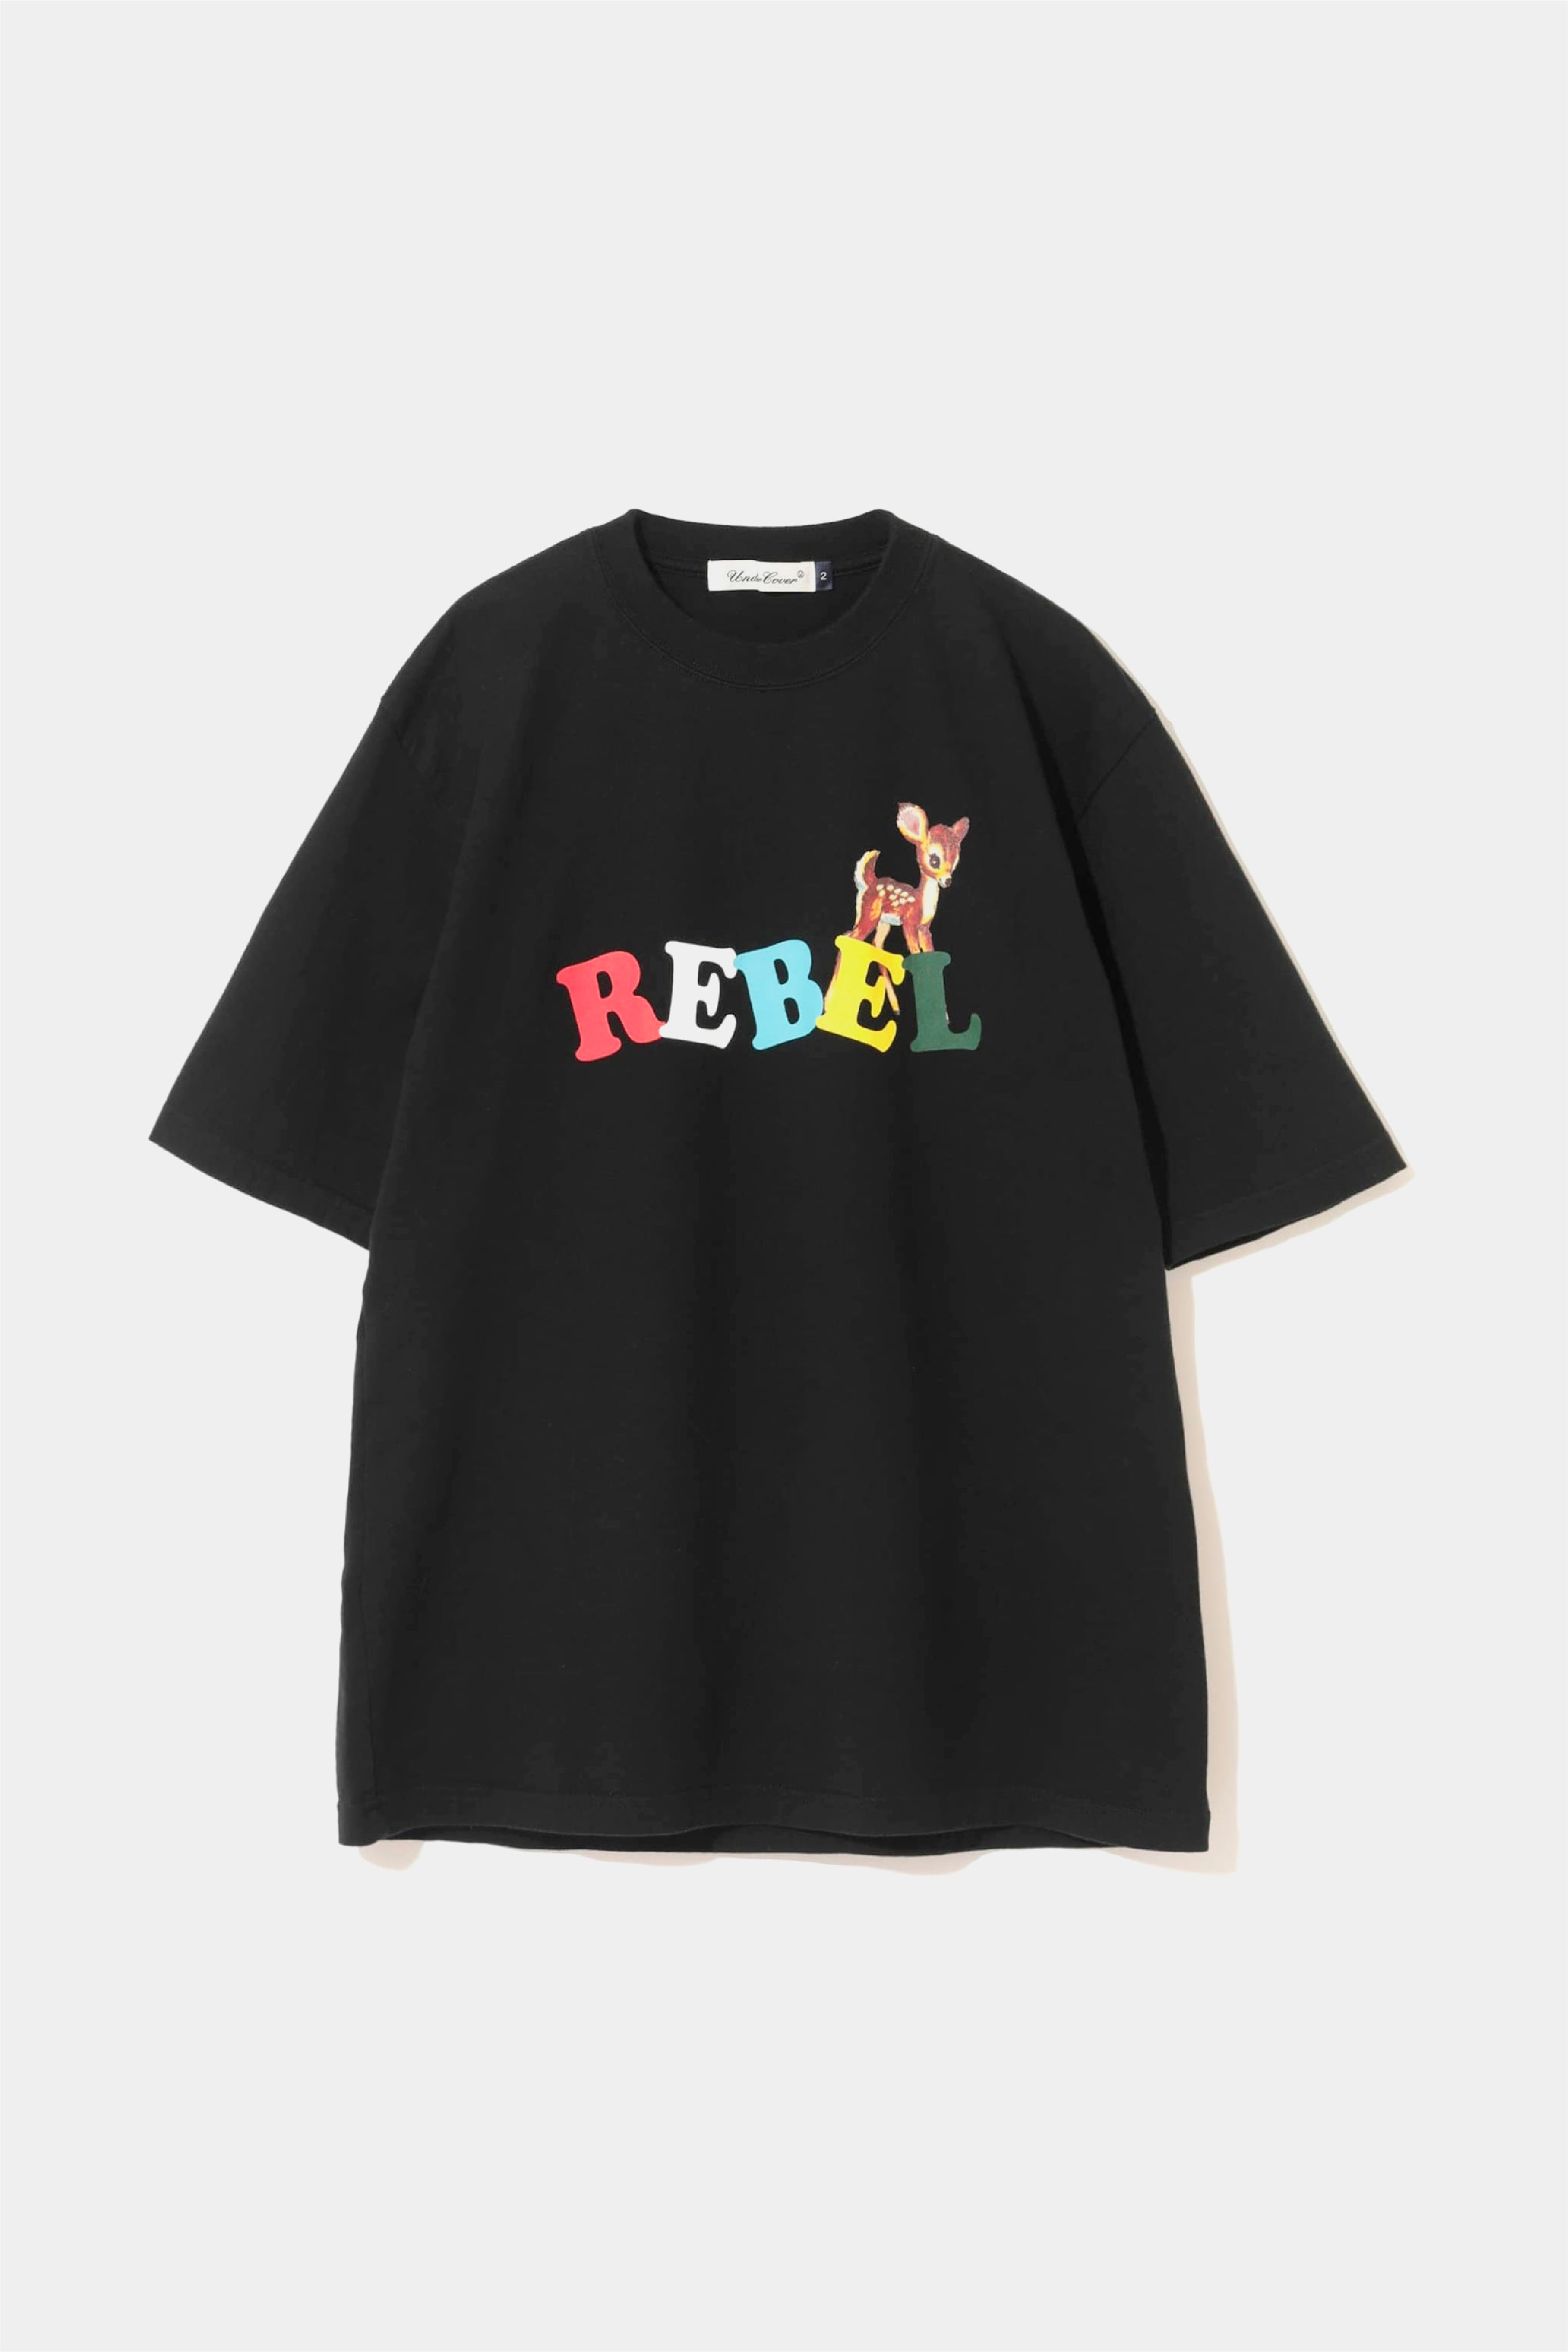 Selectshop FRAME - UNDERCOVER Rebel T-Shirt T-Shirts Concept Store Dubai